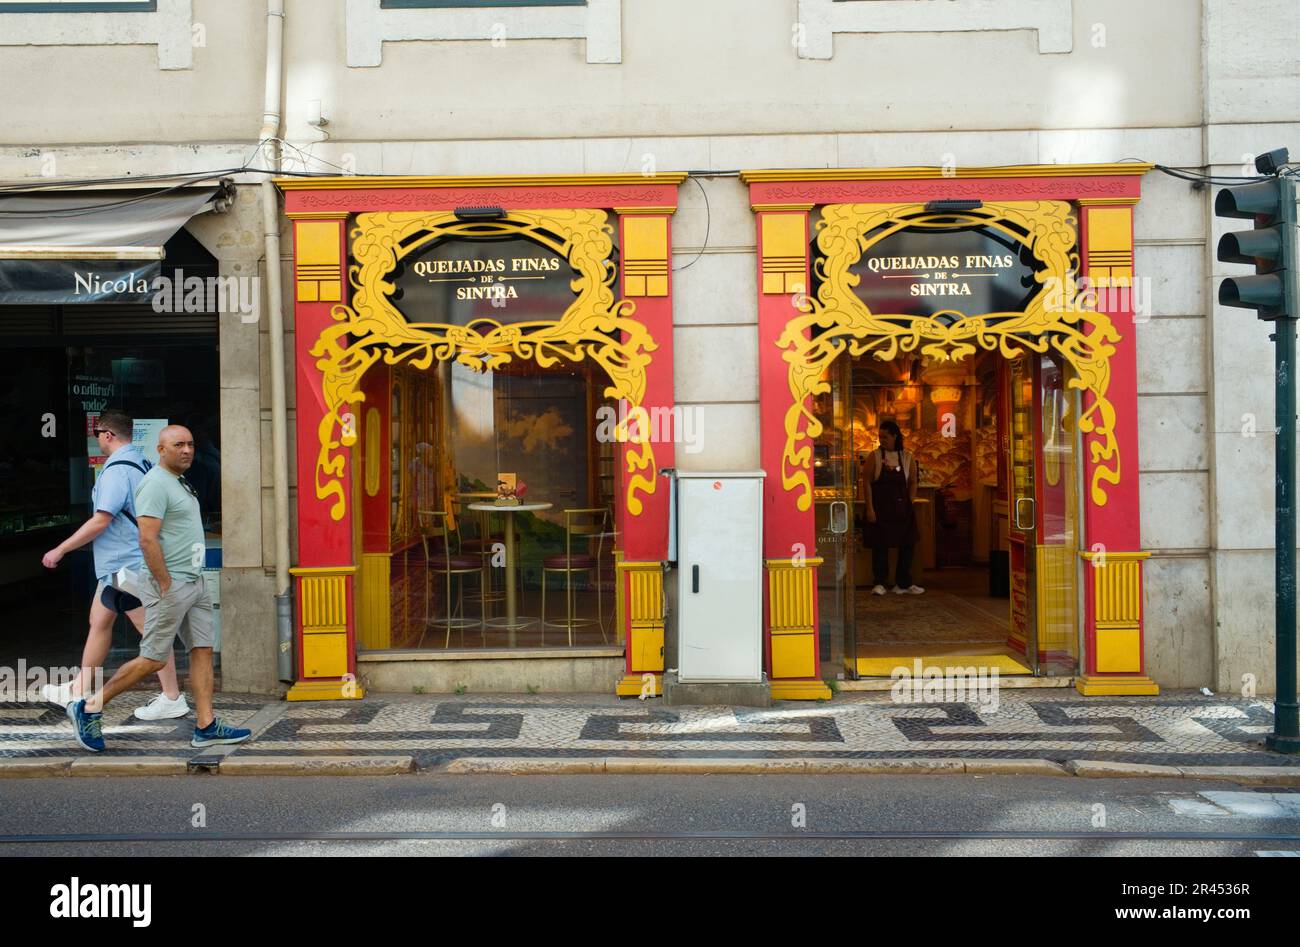 Il negozio Queijadas Finas de Sintra nel quartiere Baixa di Lisbona vende questo dessert gastronomico locale Foto Stock